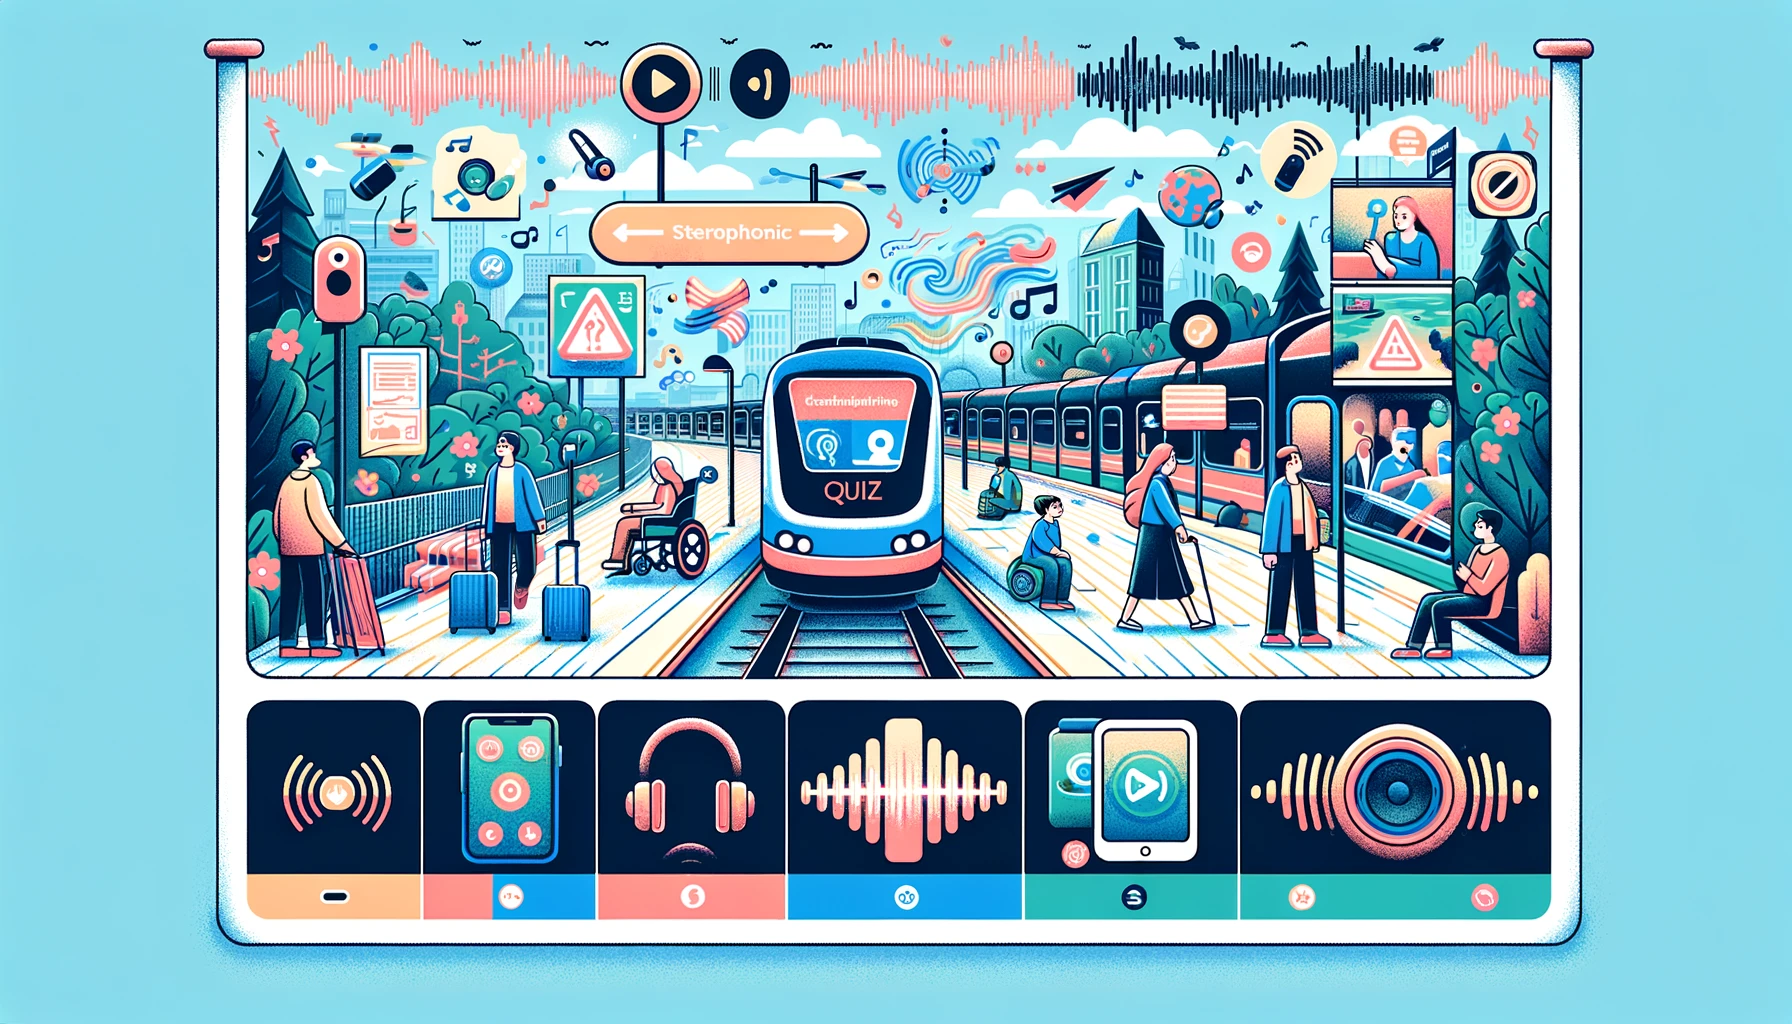 Na tej poziomej ilustracji przedstawiono kluczowe funkcje aplikacji EchoVis Quiz. Po lewej stronie znajduje się osoba stojąca na peronie dworca kolejowego, otoczona falami dźwiękowymi, które wizualnie reprezentują echolokację i naukę słuchową. W centrum ilustracji ukazano zatłoczoną scenę uliczną z dodatkowymi falami dźwiękowymi, podkreślającą koncentrację aplikacji na nawigacji w ruchliwych środowiskach. Po prawej stronie widoczne jest spokojne otoczenie lasu, również z falami dźwiękowymi, wskazujące na wszechstronność aplikacji w różnych środowiskach. Logo "EchoVis Quiz" jest wyraźnie umieszczone na górze, na środku banera. Poniżej logo znajdują się ikony symbolizujące różne grupy wiekowe i zdolności, co podkreśla uniwersalność dostępności aplikacji. Dodatkowo, na ilustracji umieszczono obrazy stereofonicznych słuchawek i parę głośników, symbolizujących skupienie na aspekcie audio aplikacji. Całość jest kolorowa i atrakcyjna, pasująca do produktu z dziedziny technologii edukacyjnej.